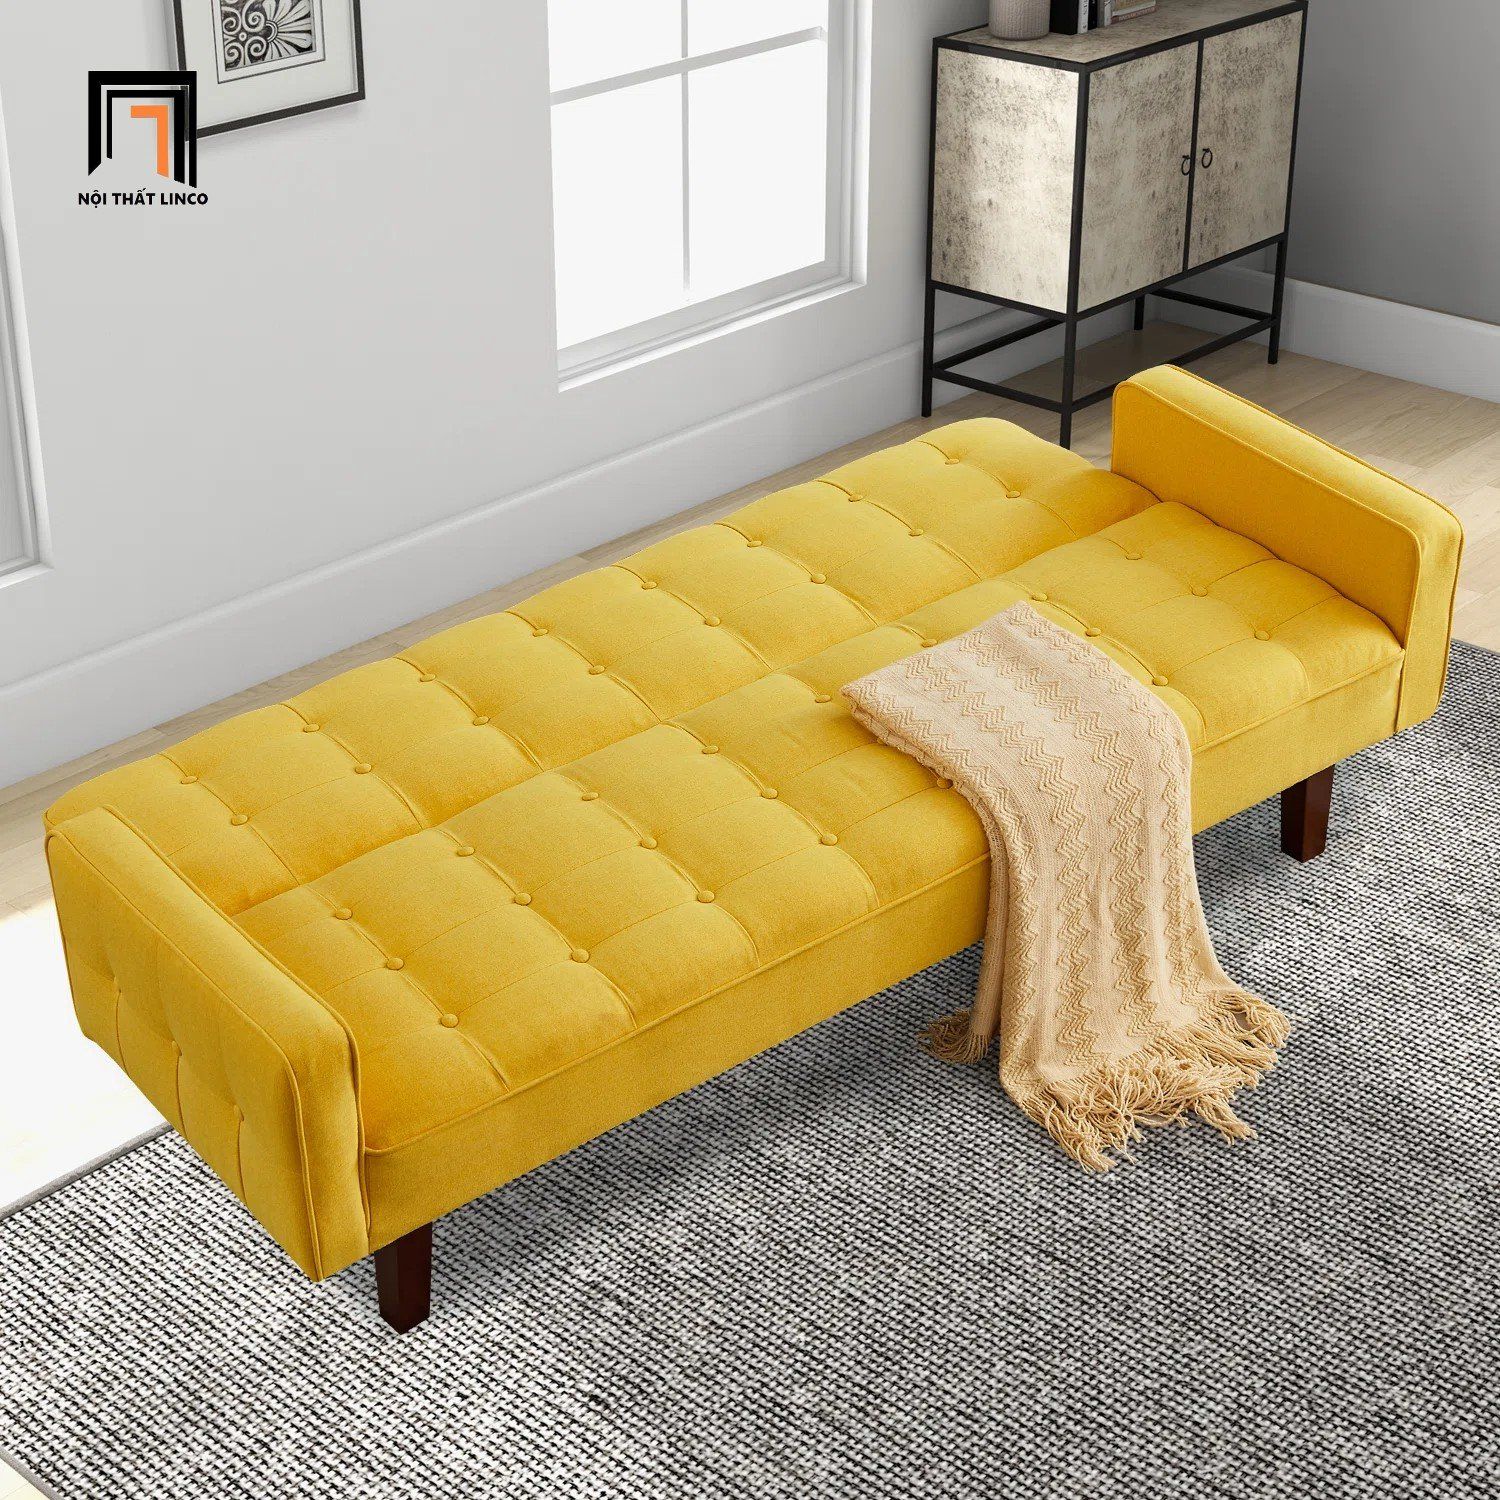  Ghế sofa băng giường nằm GB33 Montevia 2m vải nỉ xinh 